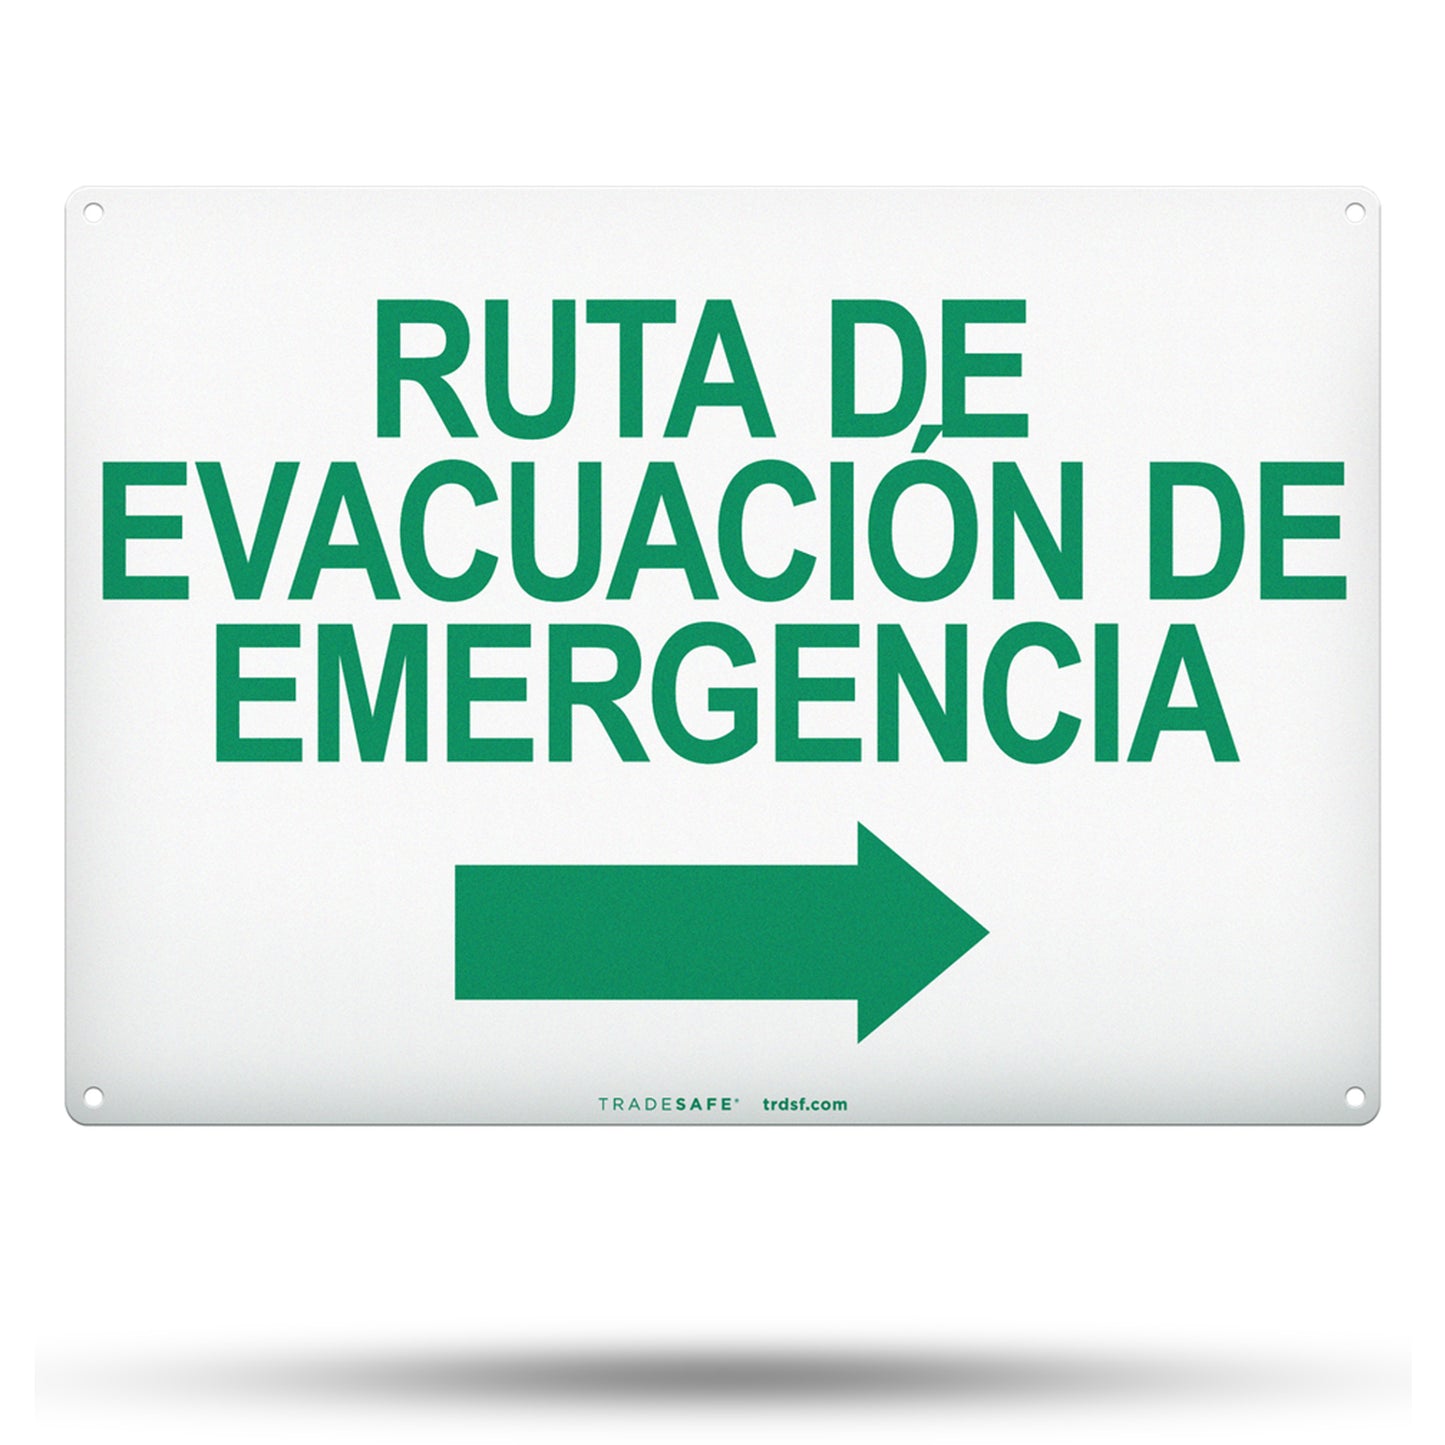 "ruta de evacuación de emergencia" sign